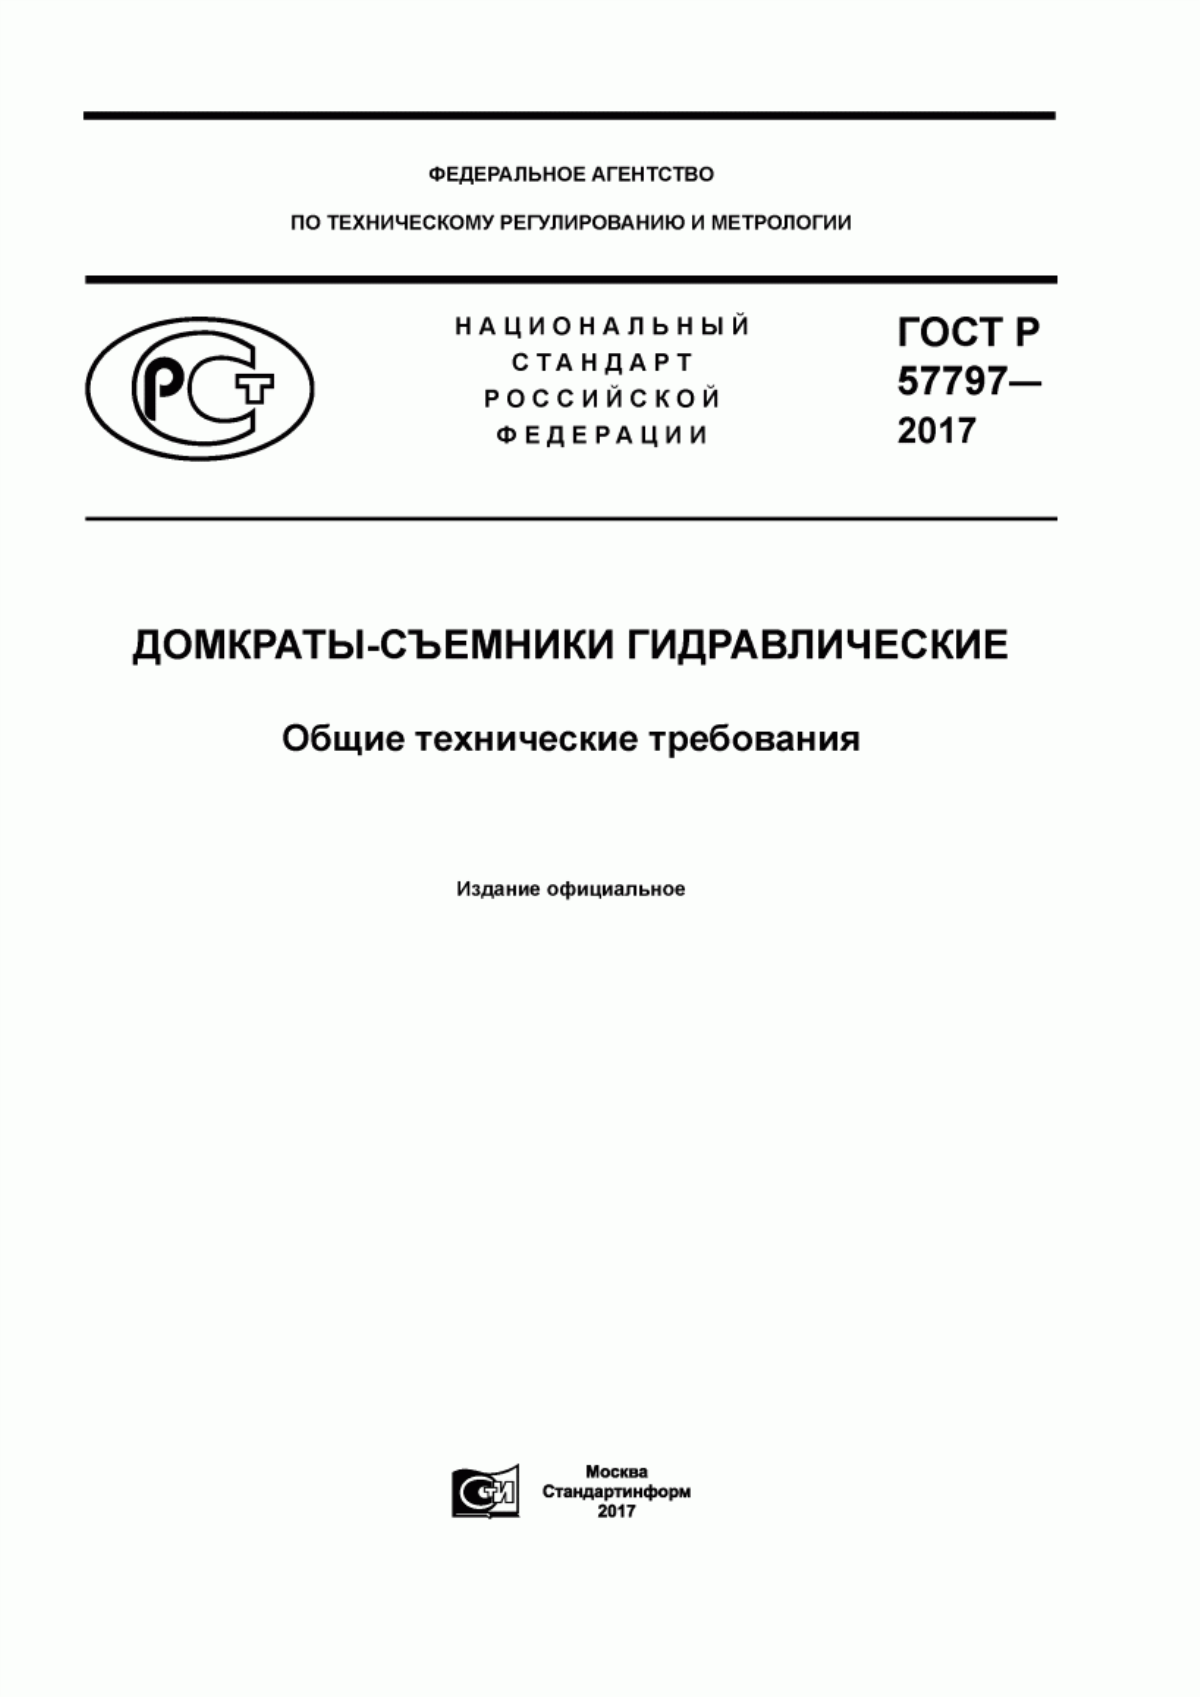 ГОСТ Р 57797-2017 Домкраты-съемники гидравлические. Общие технические требования